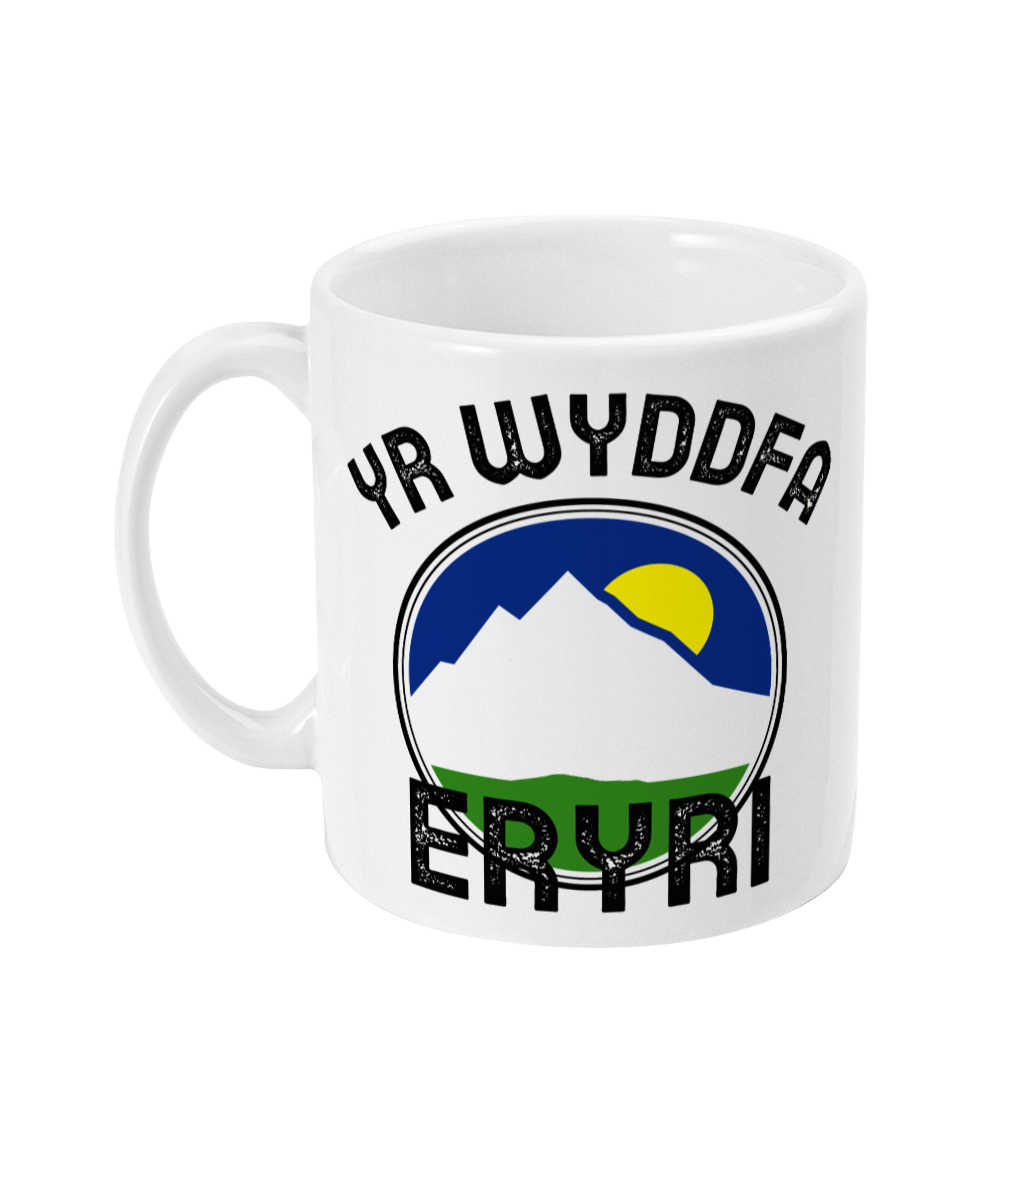 Yr Wyddfa - Eryri - Mwg